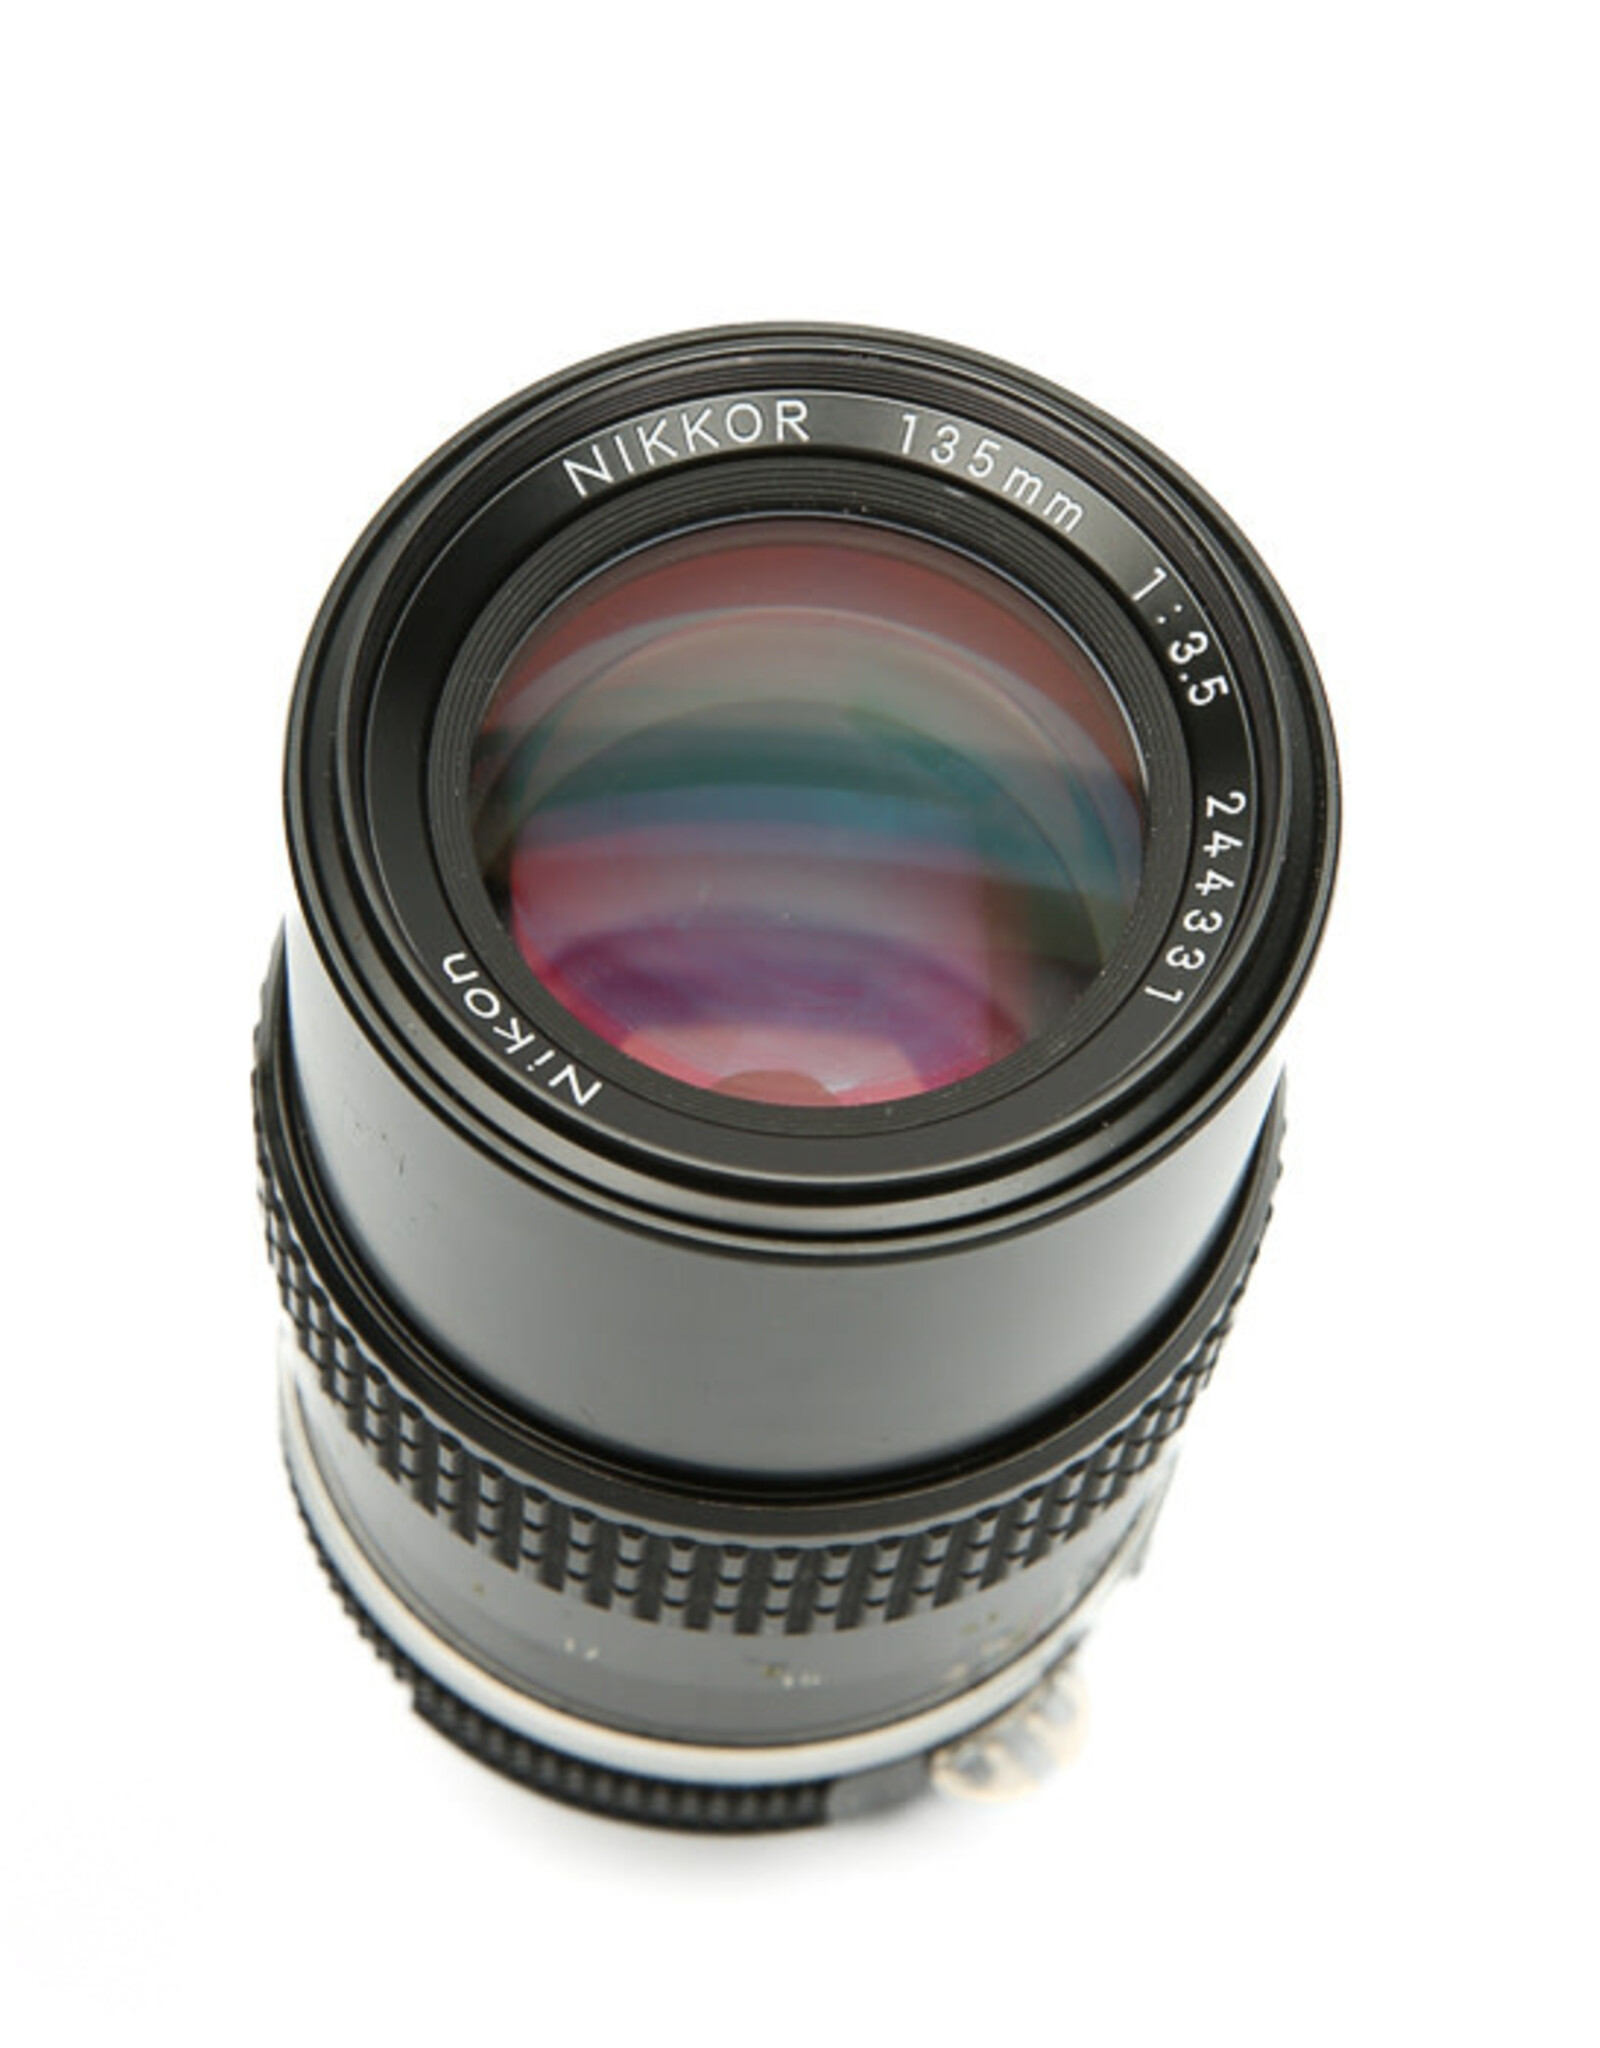 Nikon Nikon Nikkor Ai 135mm f3.5 Lens